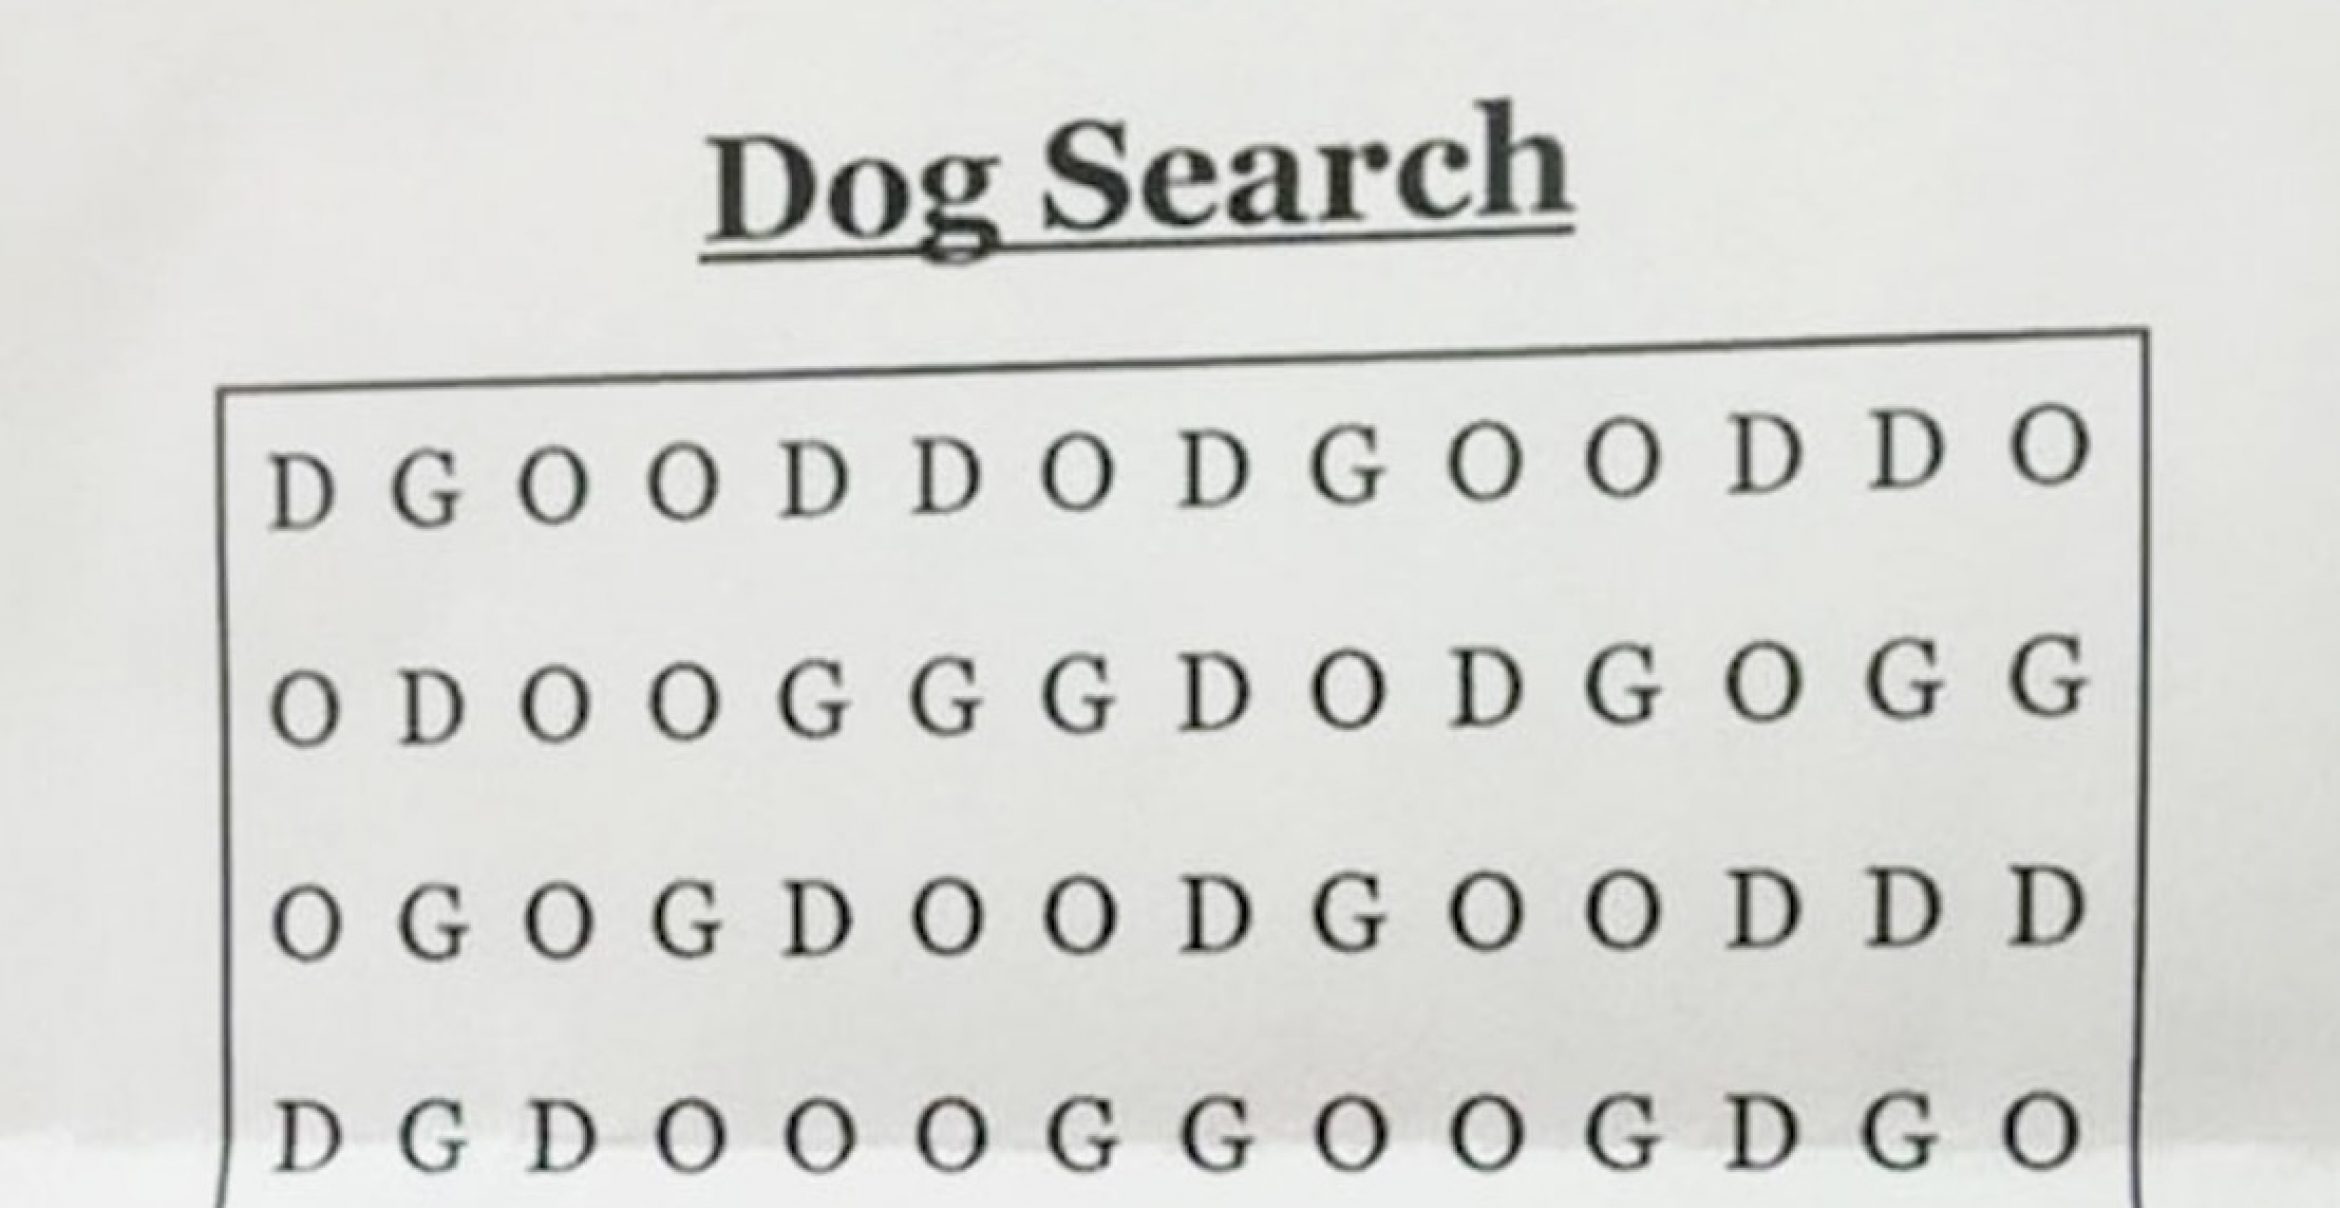 Rätsel zum Wochenende – findest du das Wort “DOG“ im Bild?